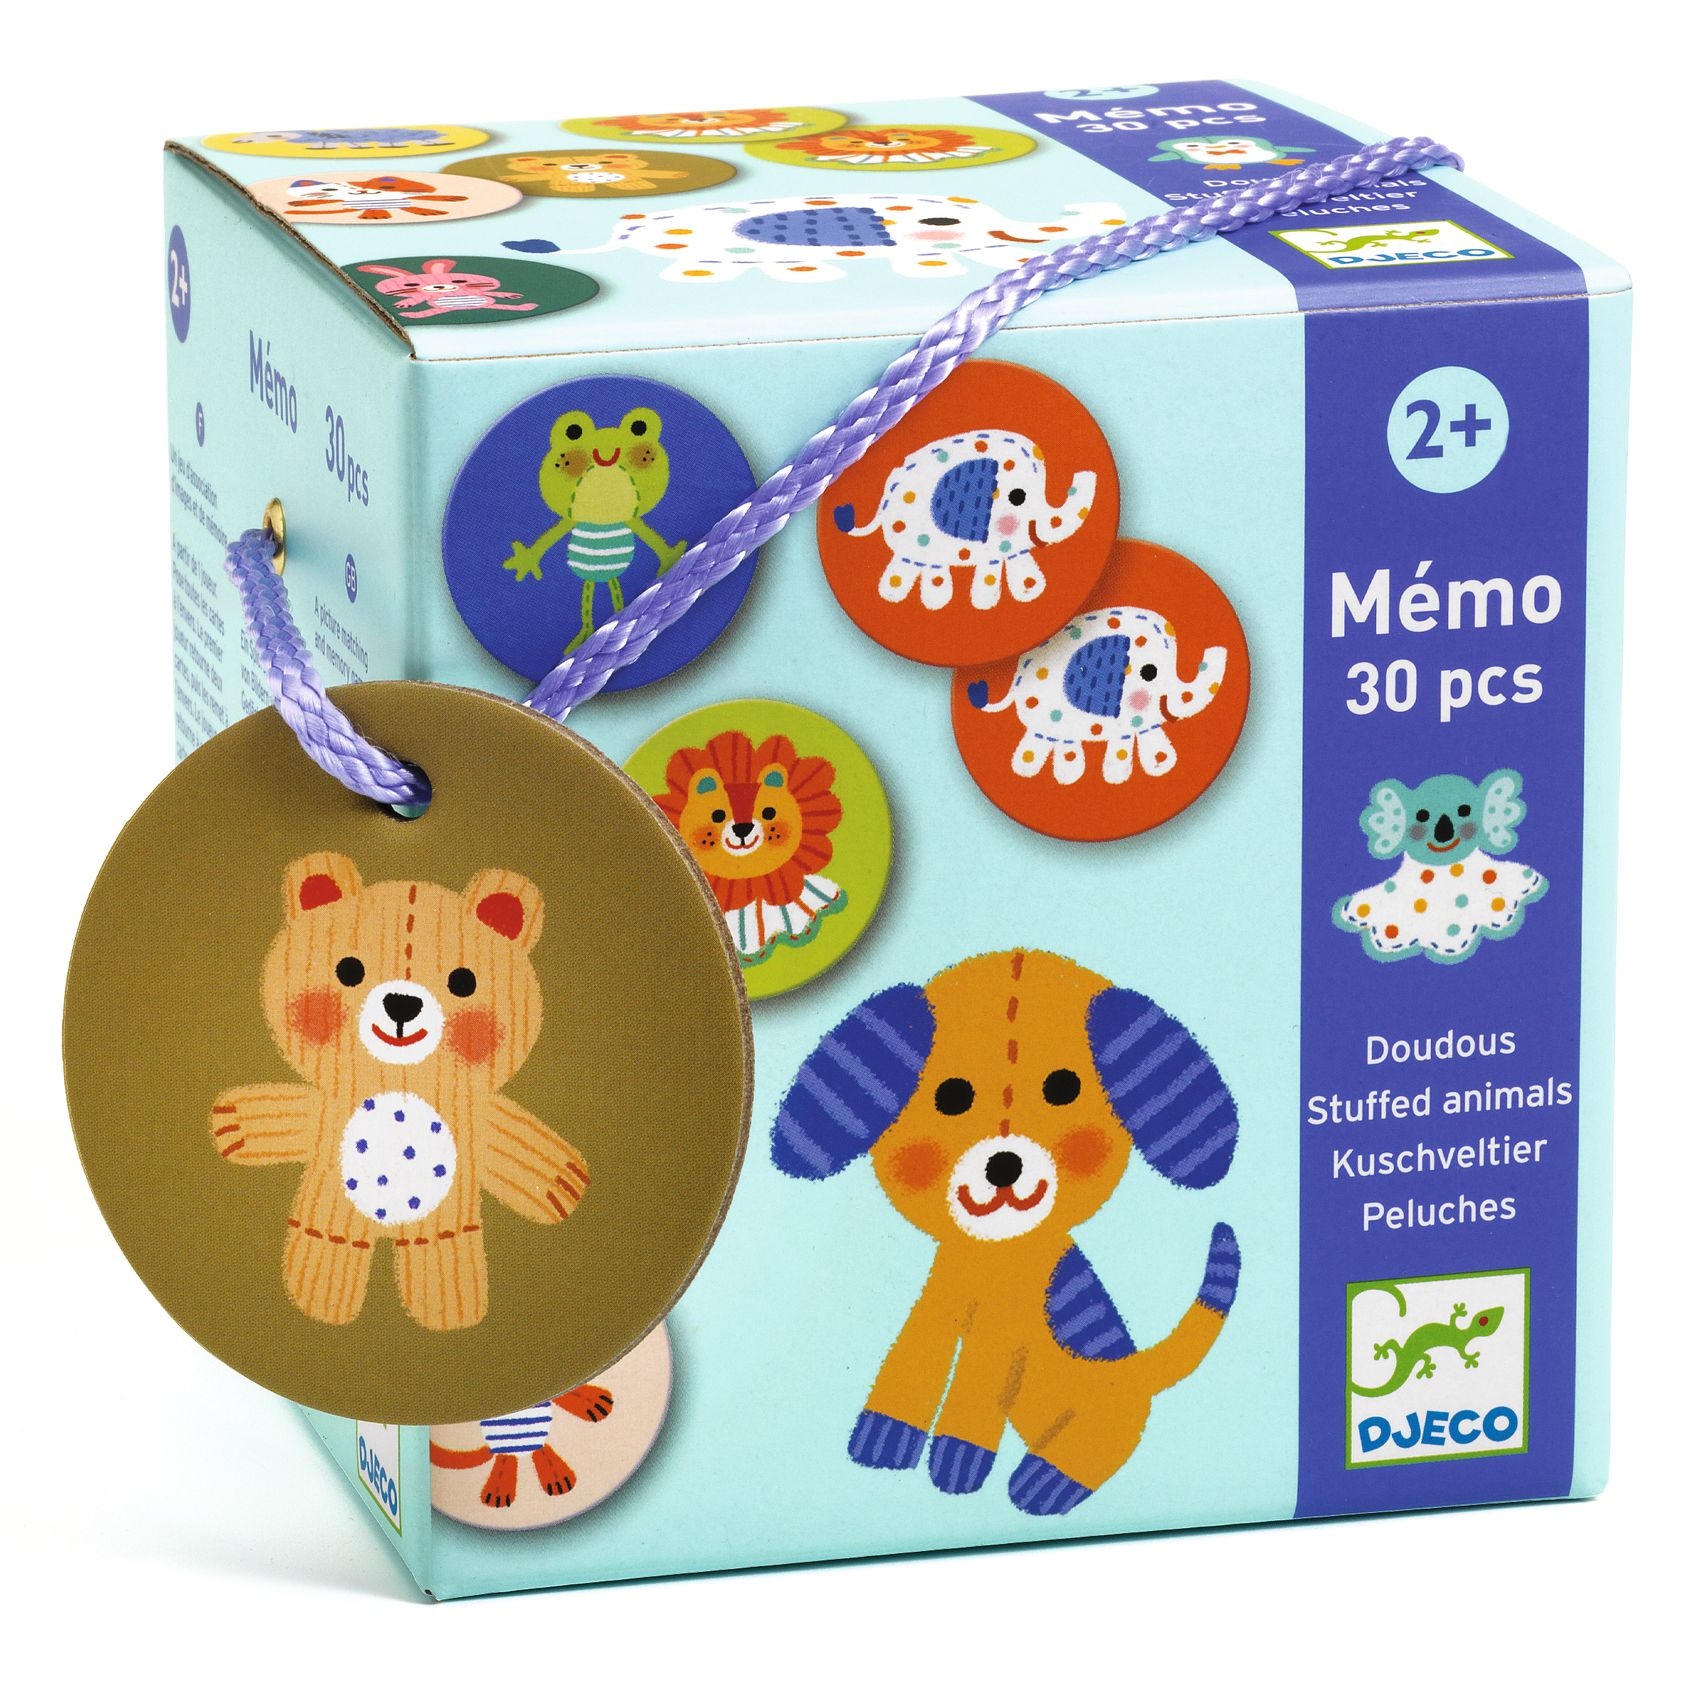 Memória játék - Kedvencek - Memo Stuffed animals - FSC MIX - 0